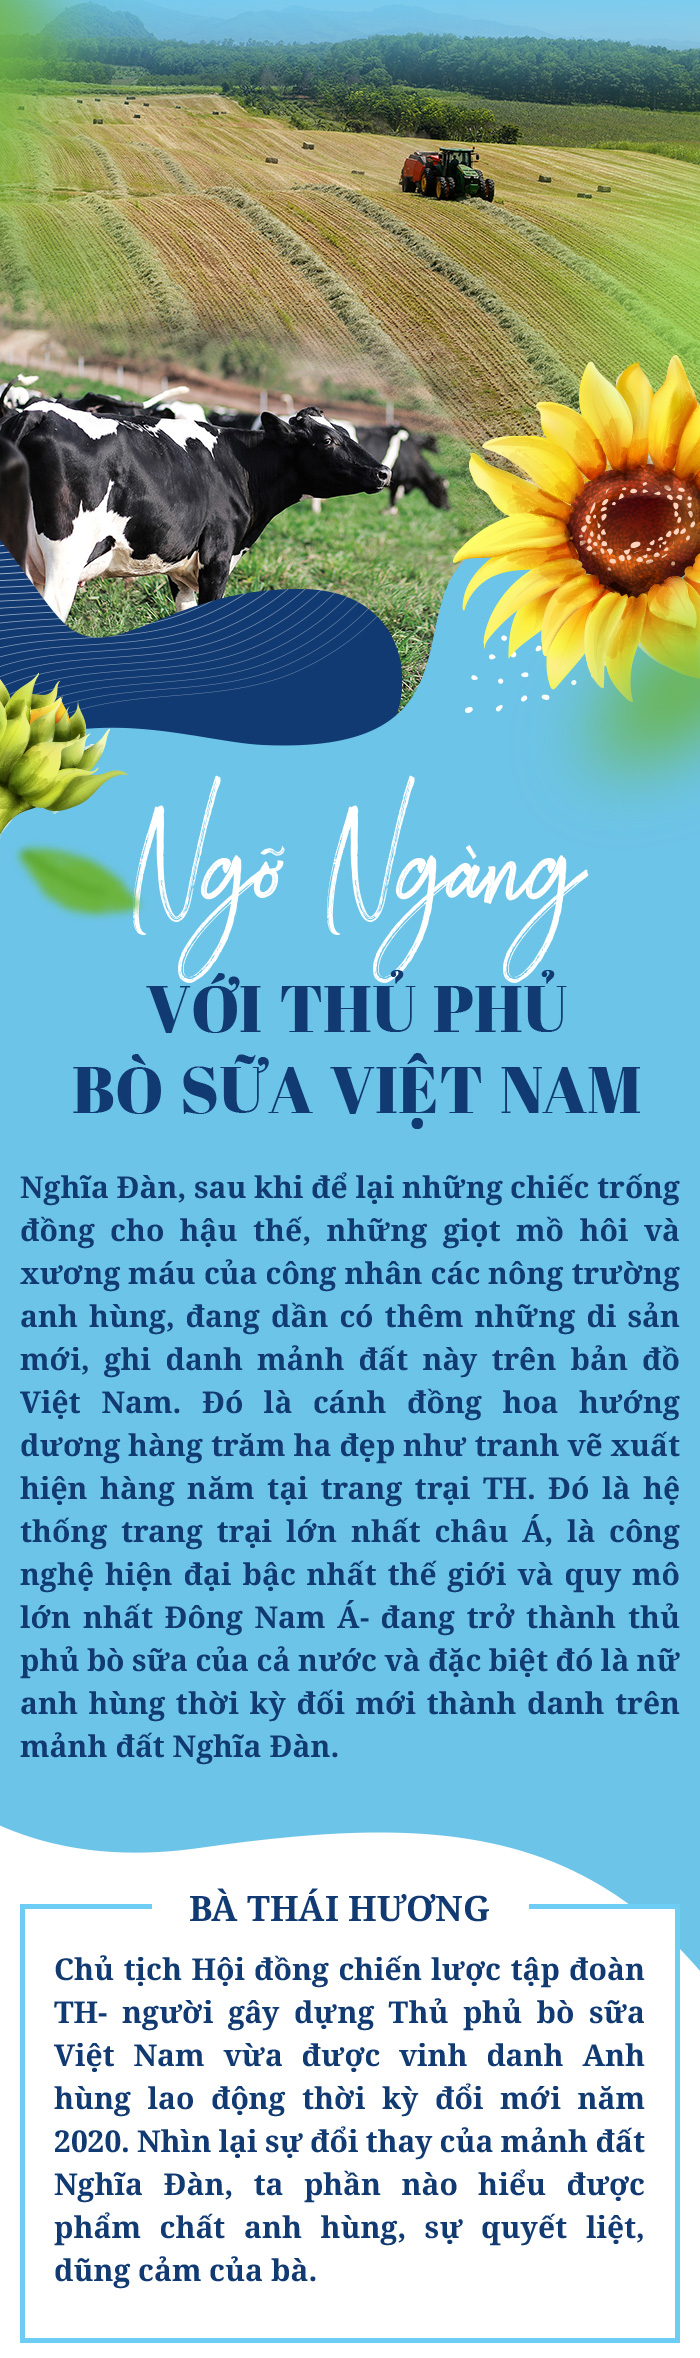 Ngỡ ngàng với thủ phủ bò sữa Việt Nam - 2